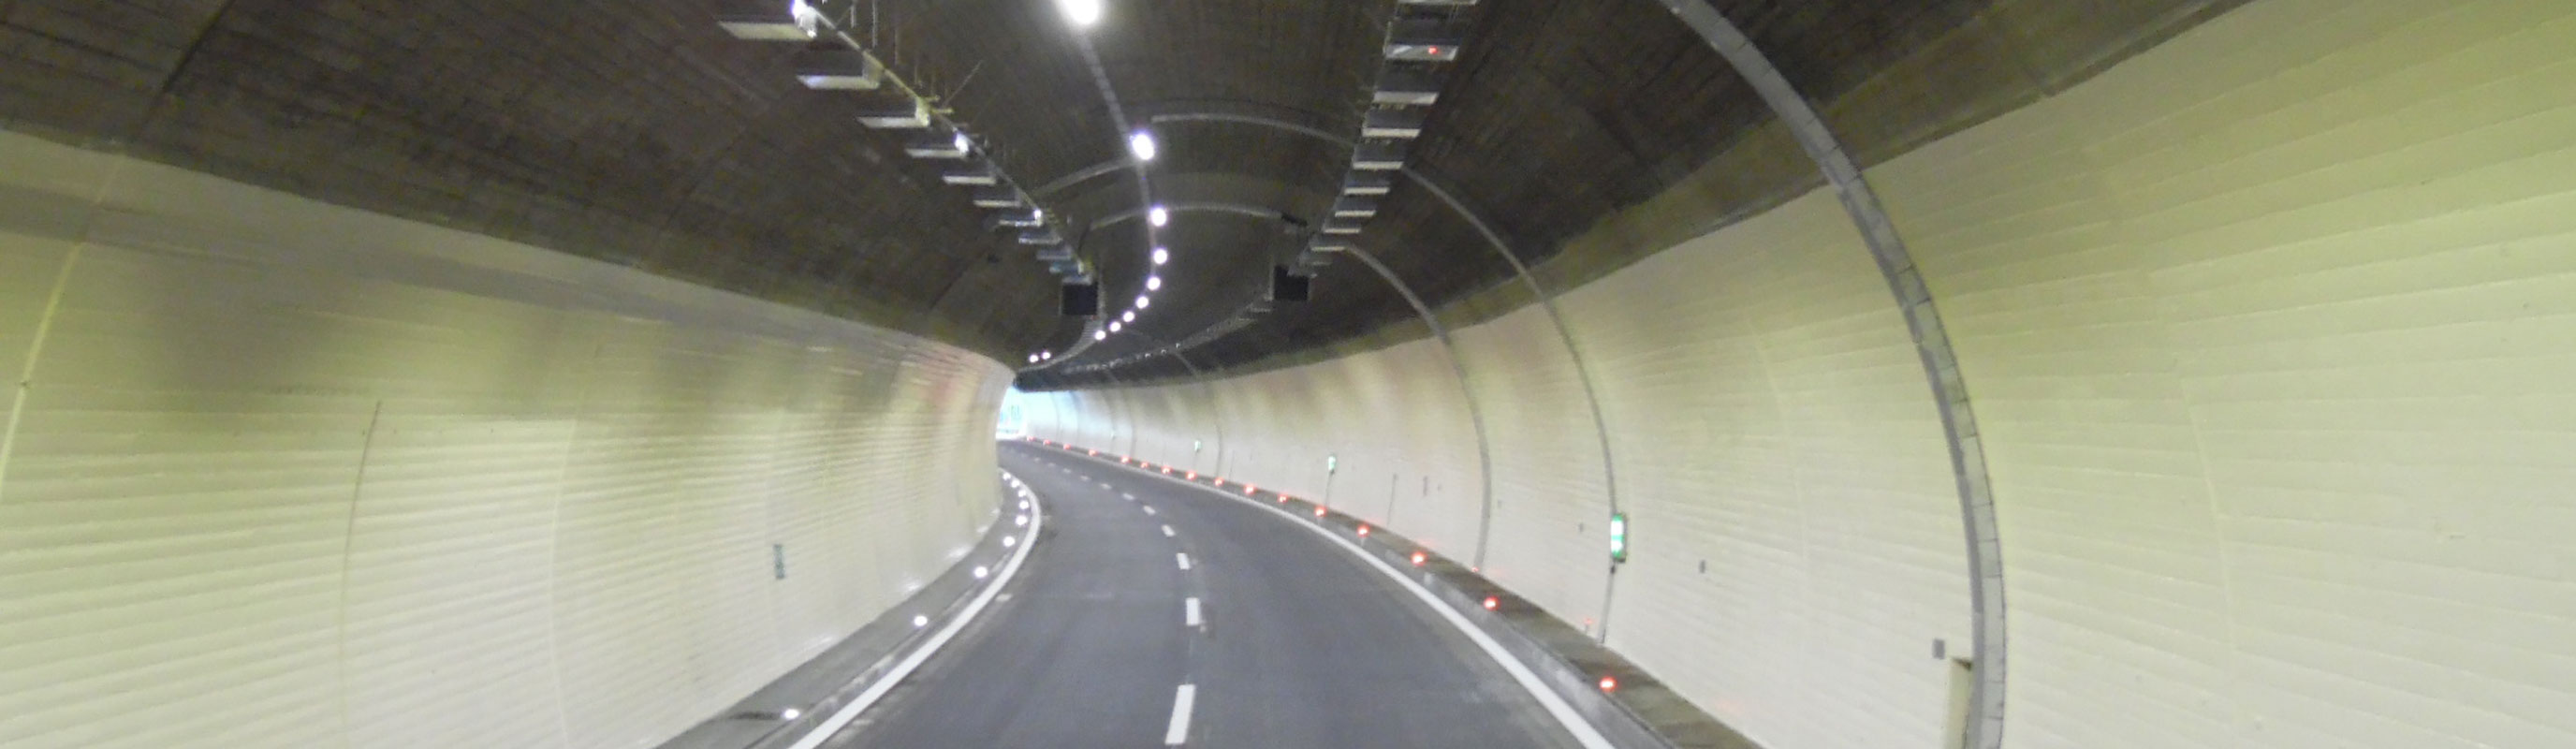 Tunnelausrüstung Hofmann Elektromontagen